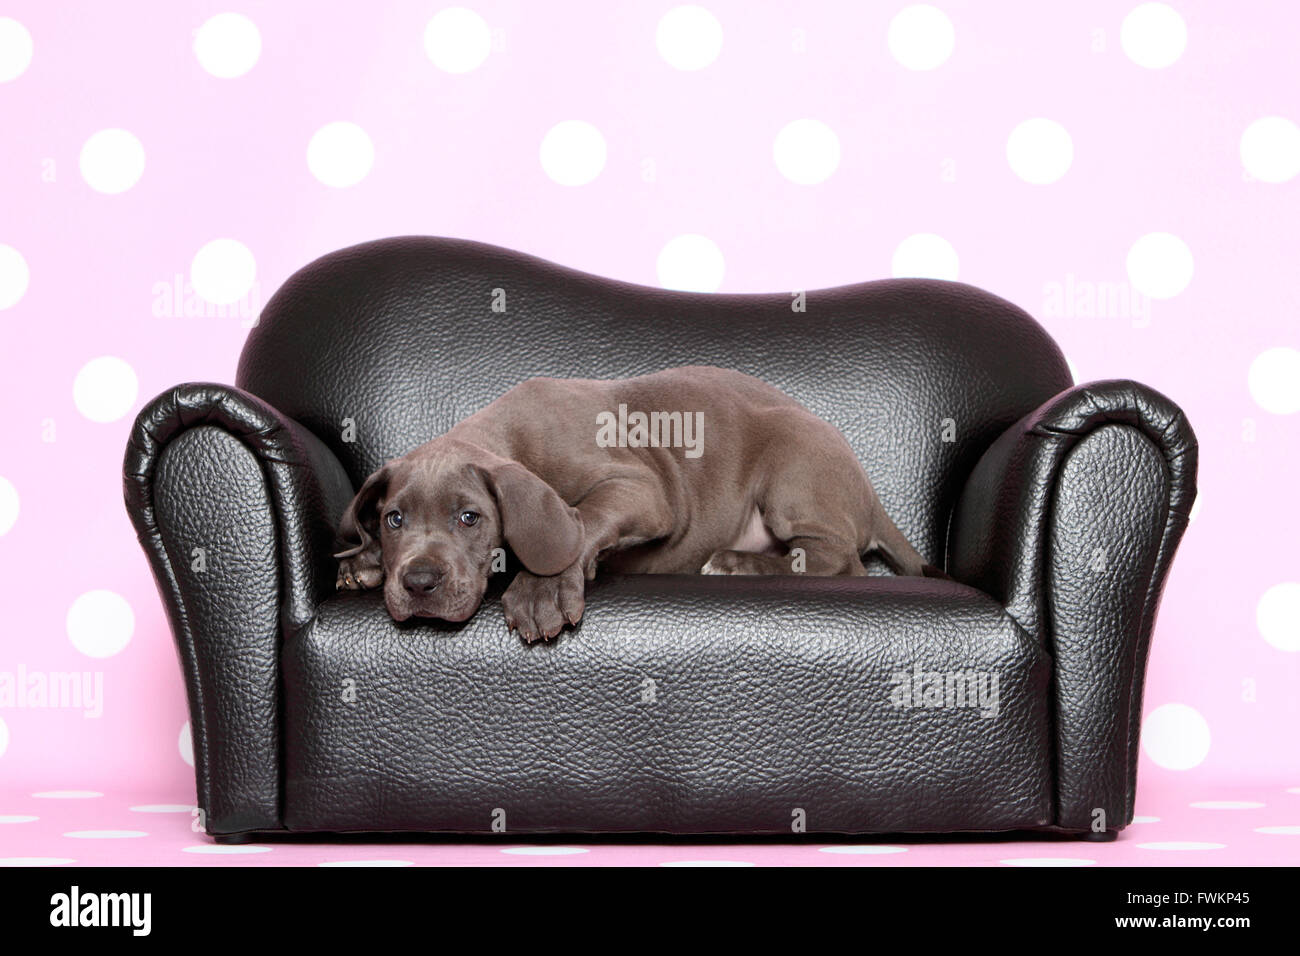 Alano Cucciolo (7 settimane di età) giacente su un nero divano in pelle Studio immagine contro uno sfondo viola con il bianco a pois Foto Stock